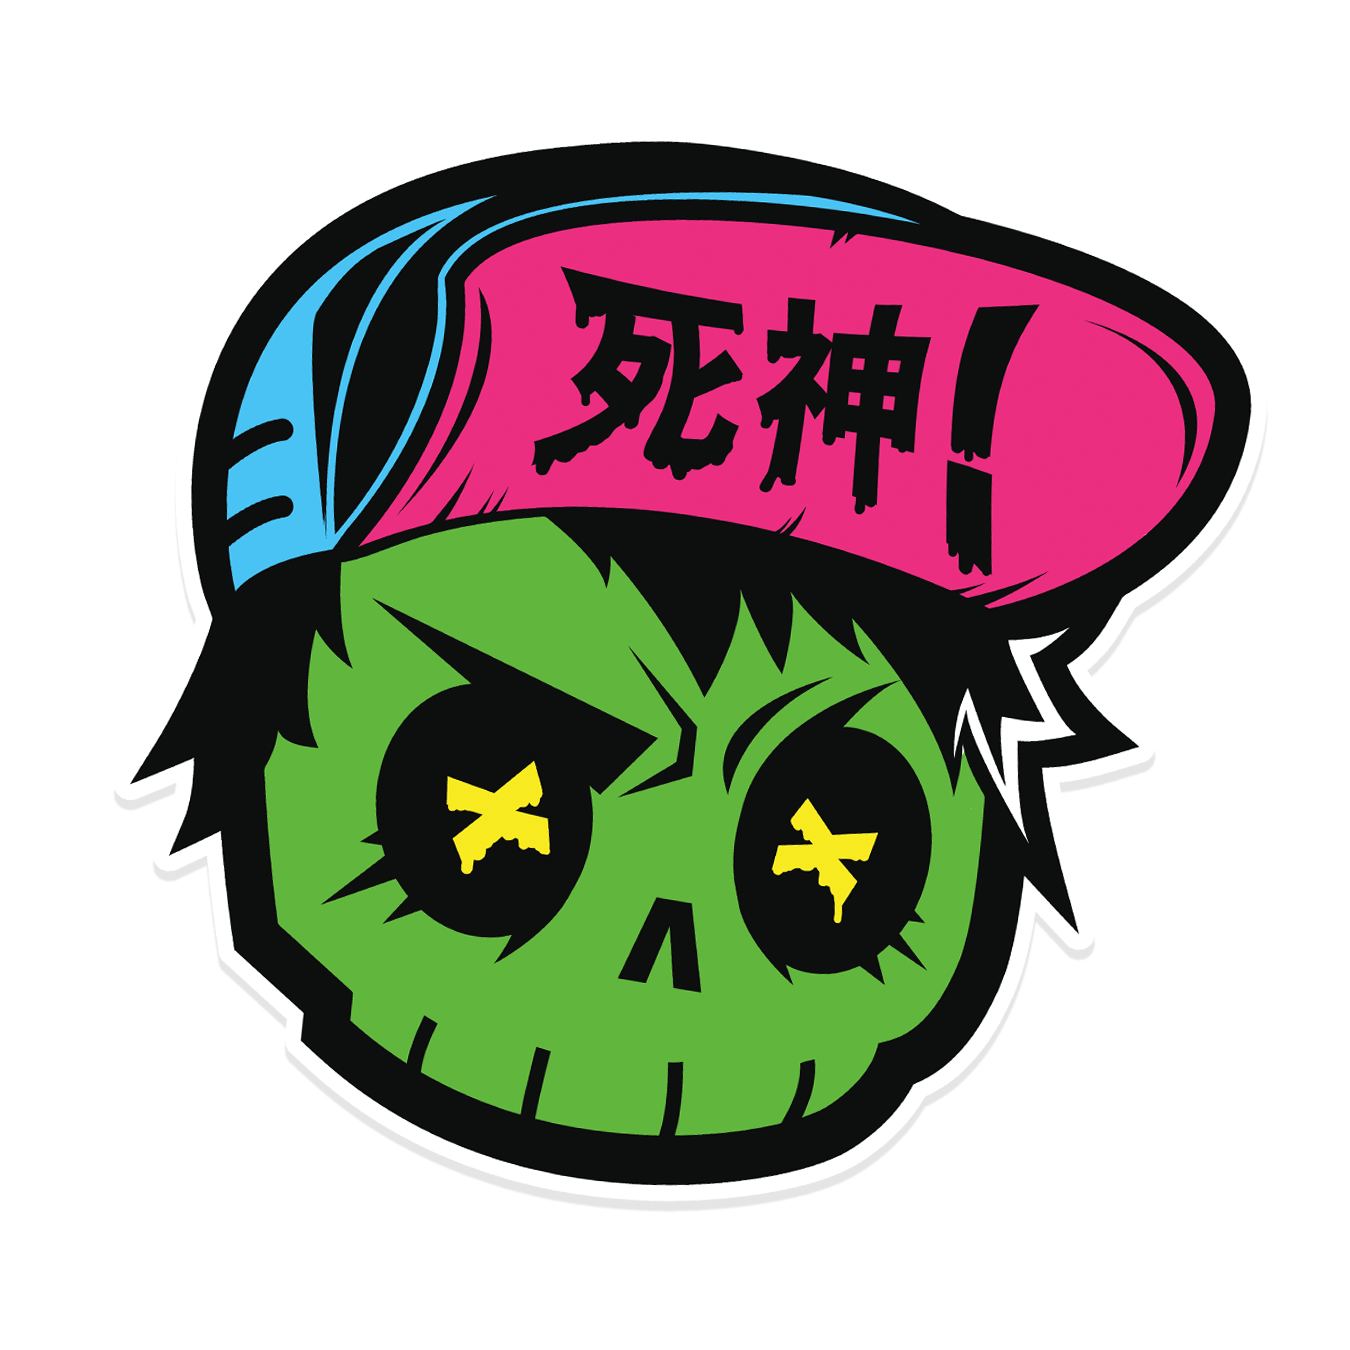 Status Error New Skull Sticker (Special Edition)